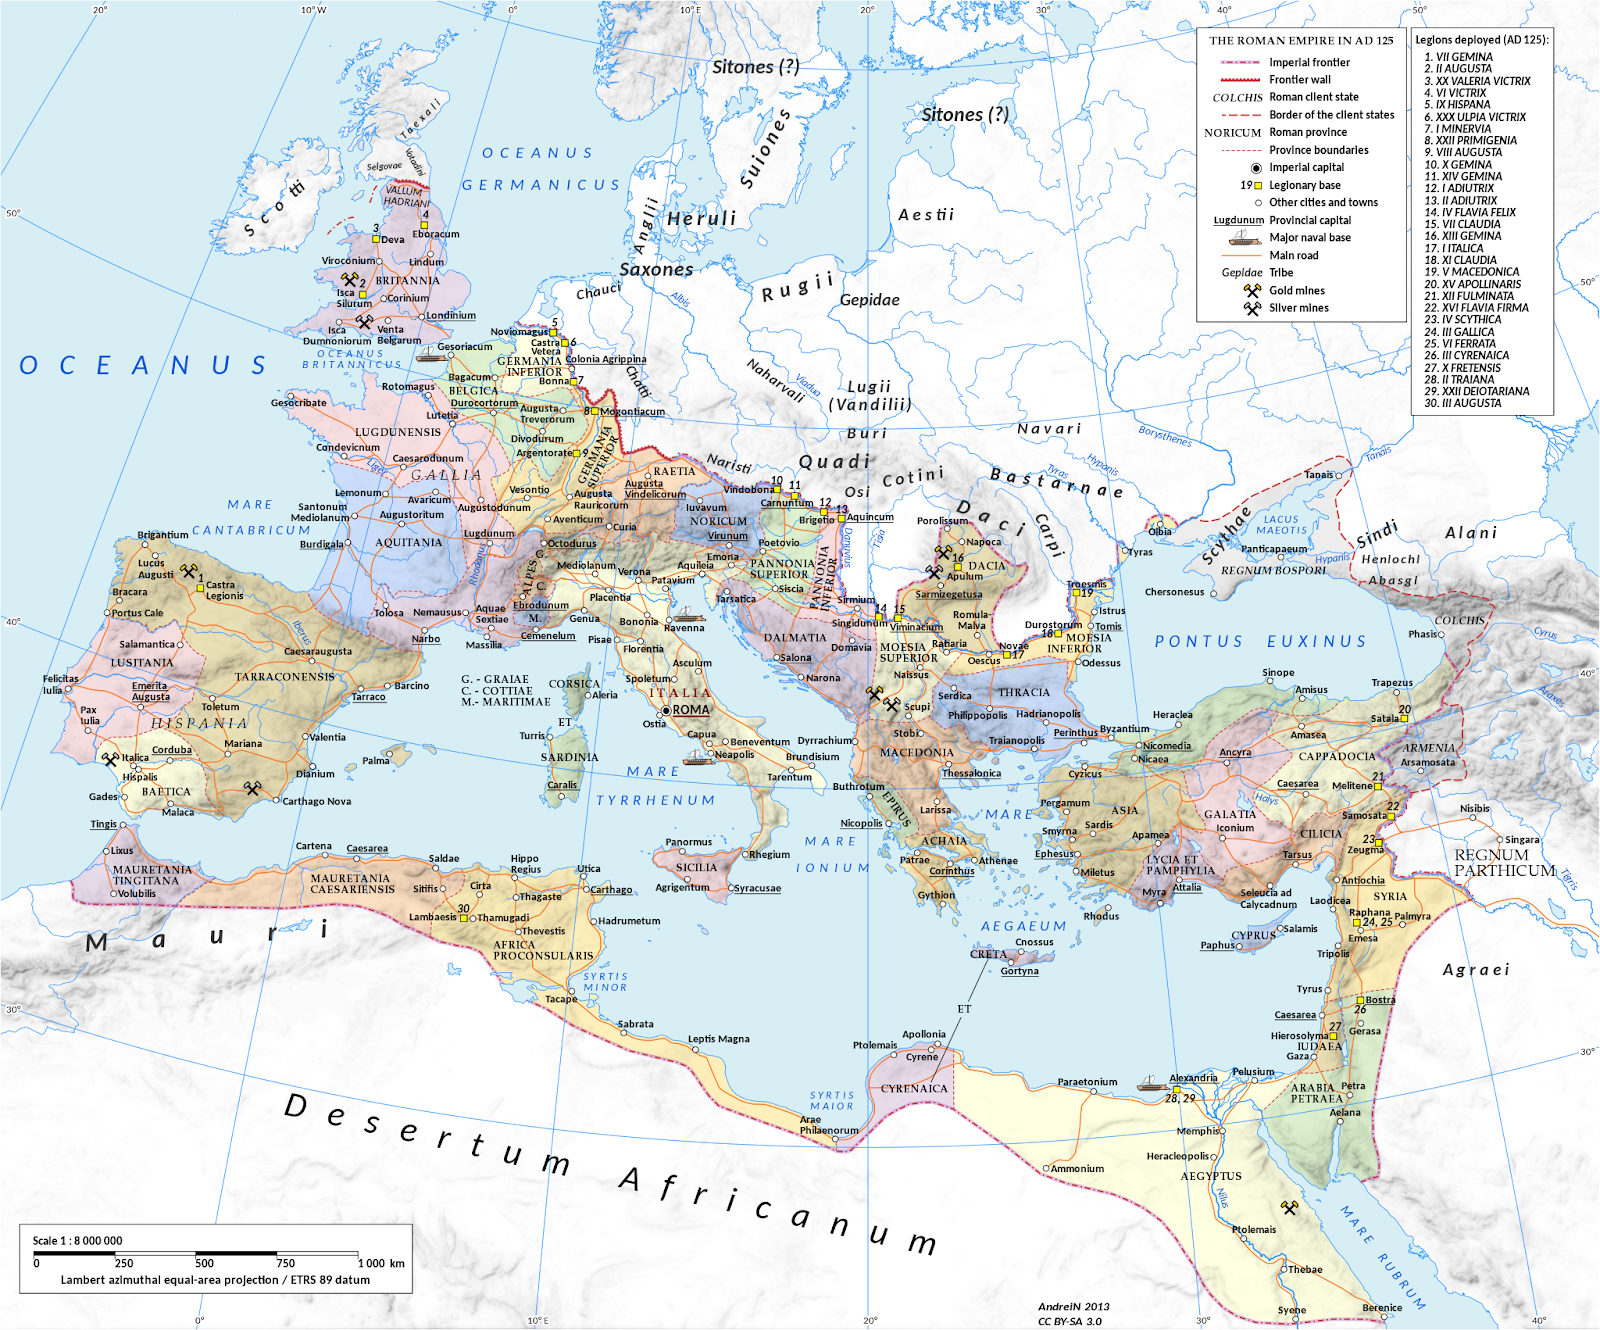 Quand l’Empire romain a-t-il atteint son apogée?